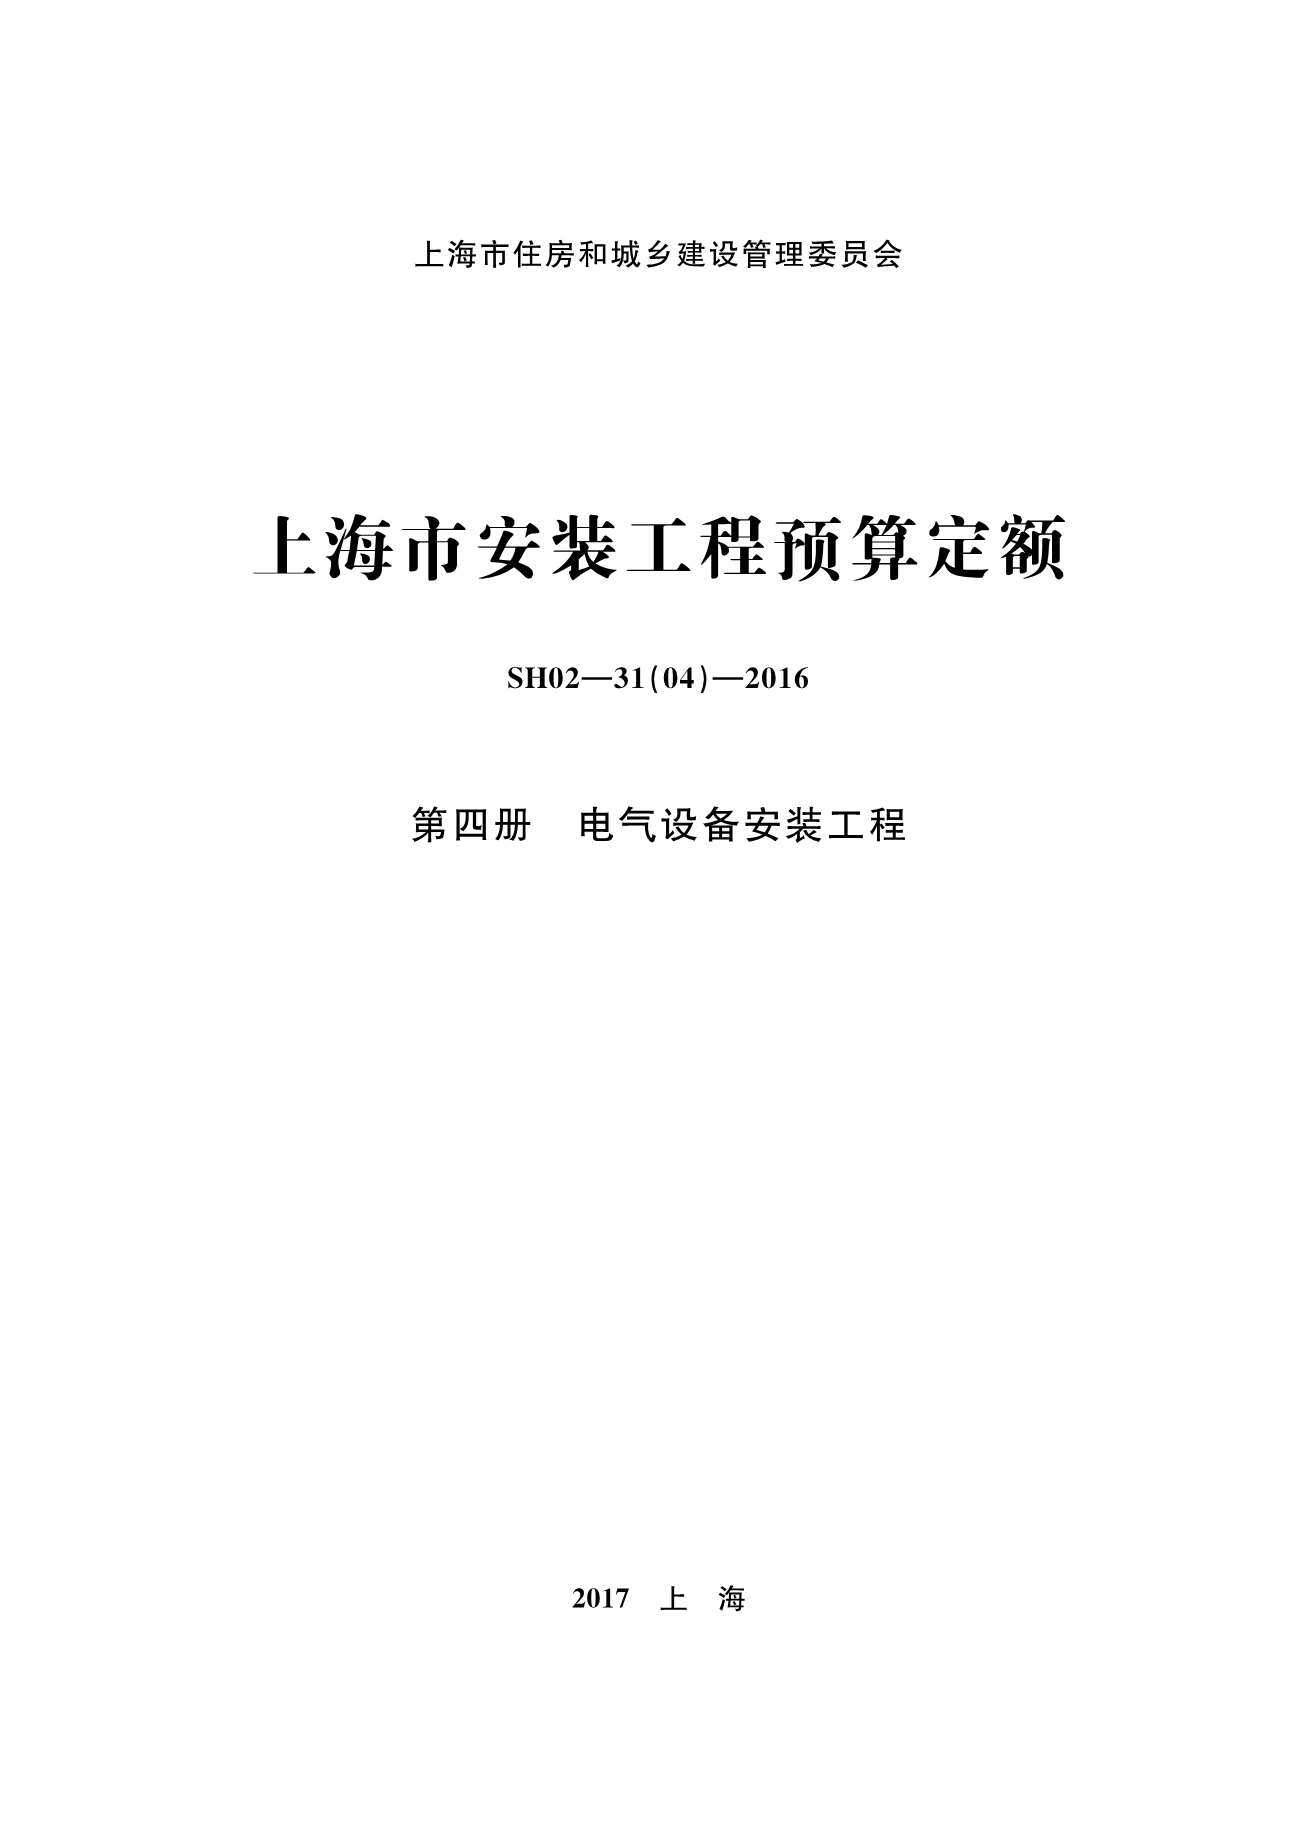 2016上海安装定额_第四册_电气设备安装工程